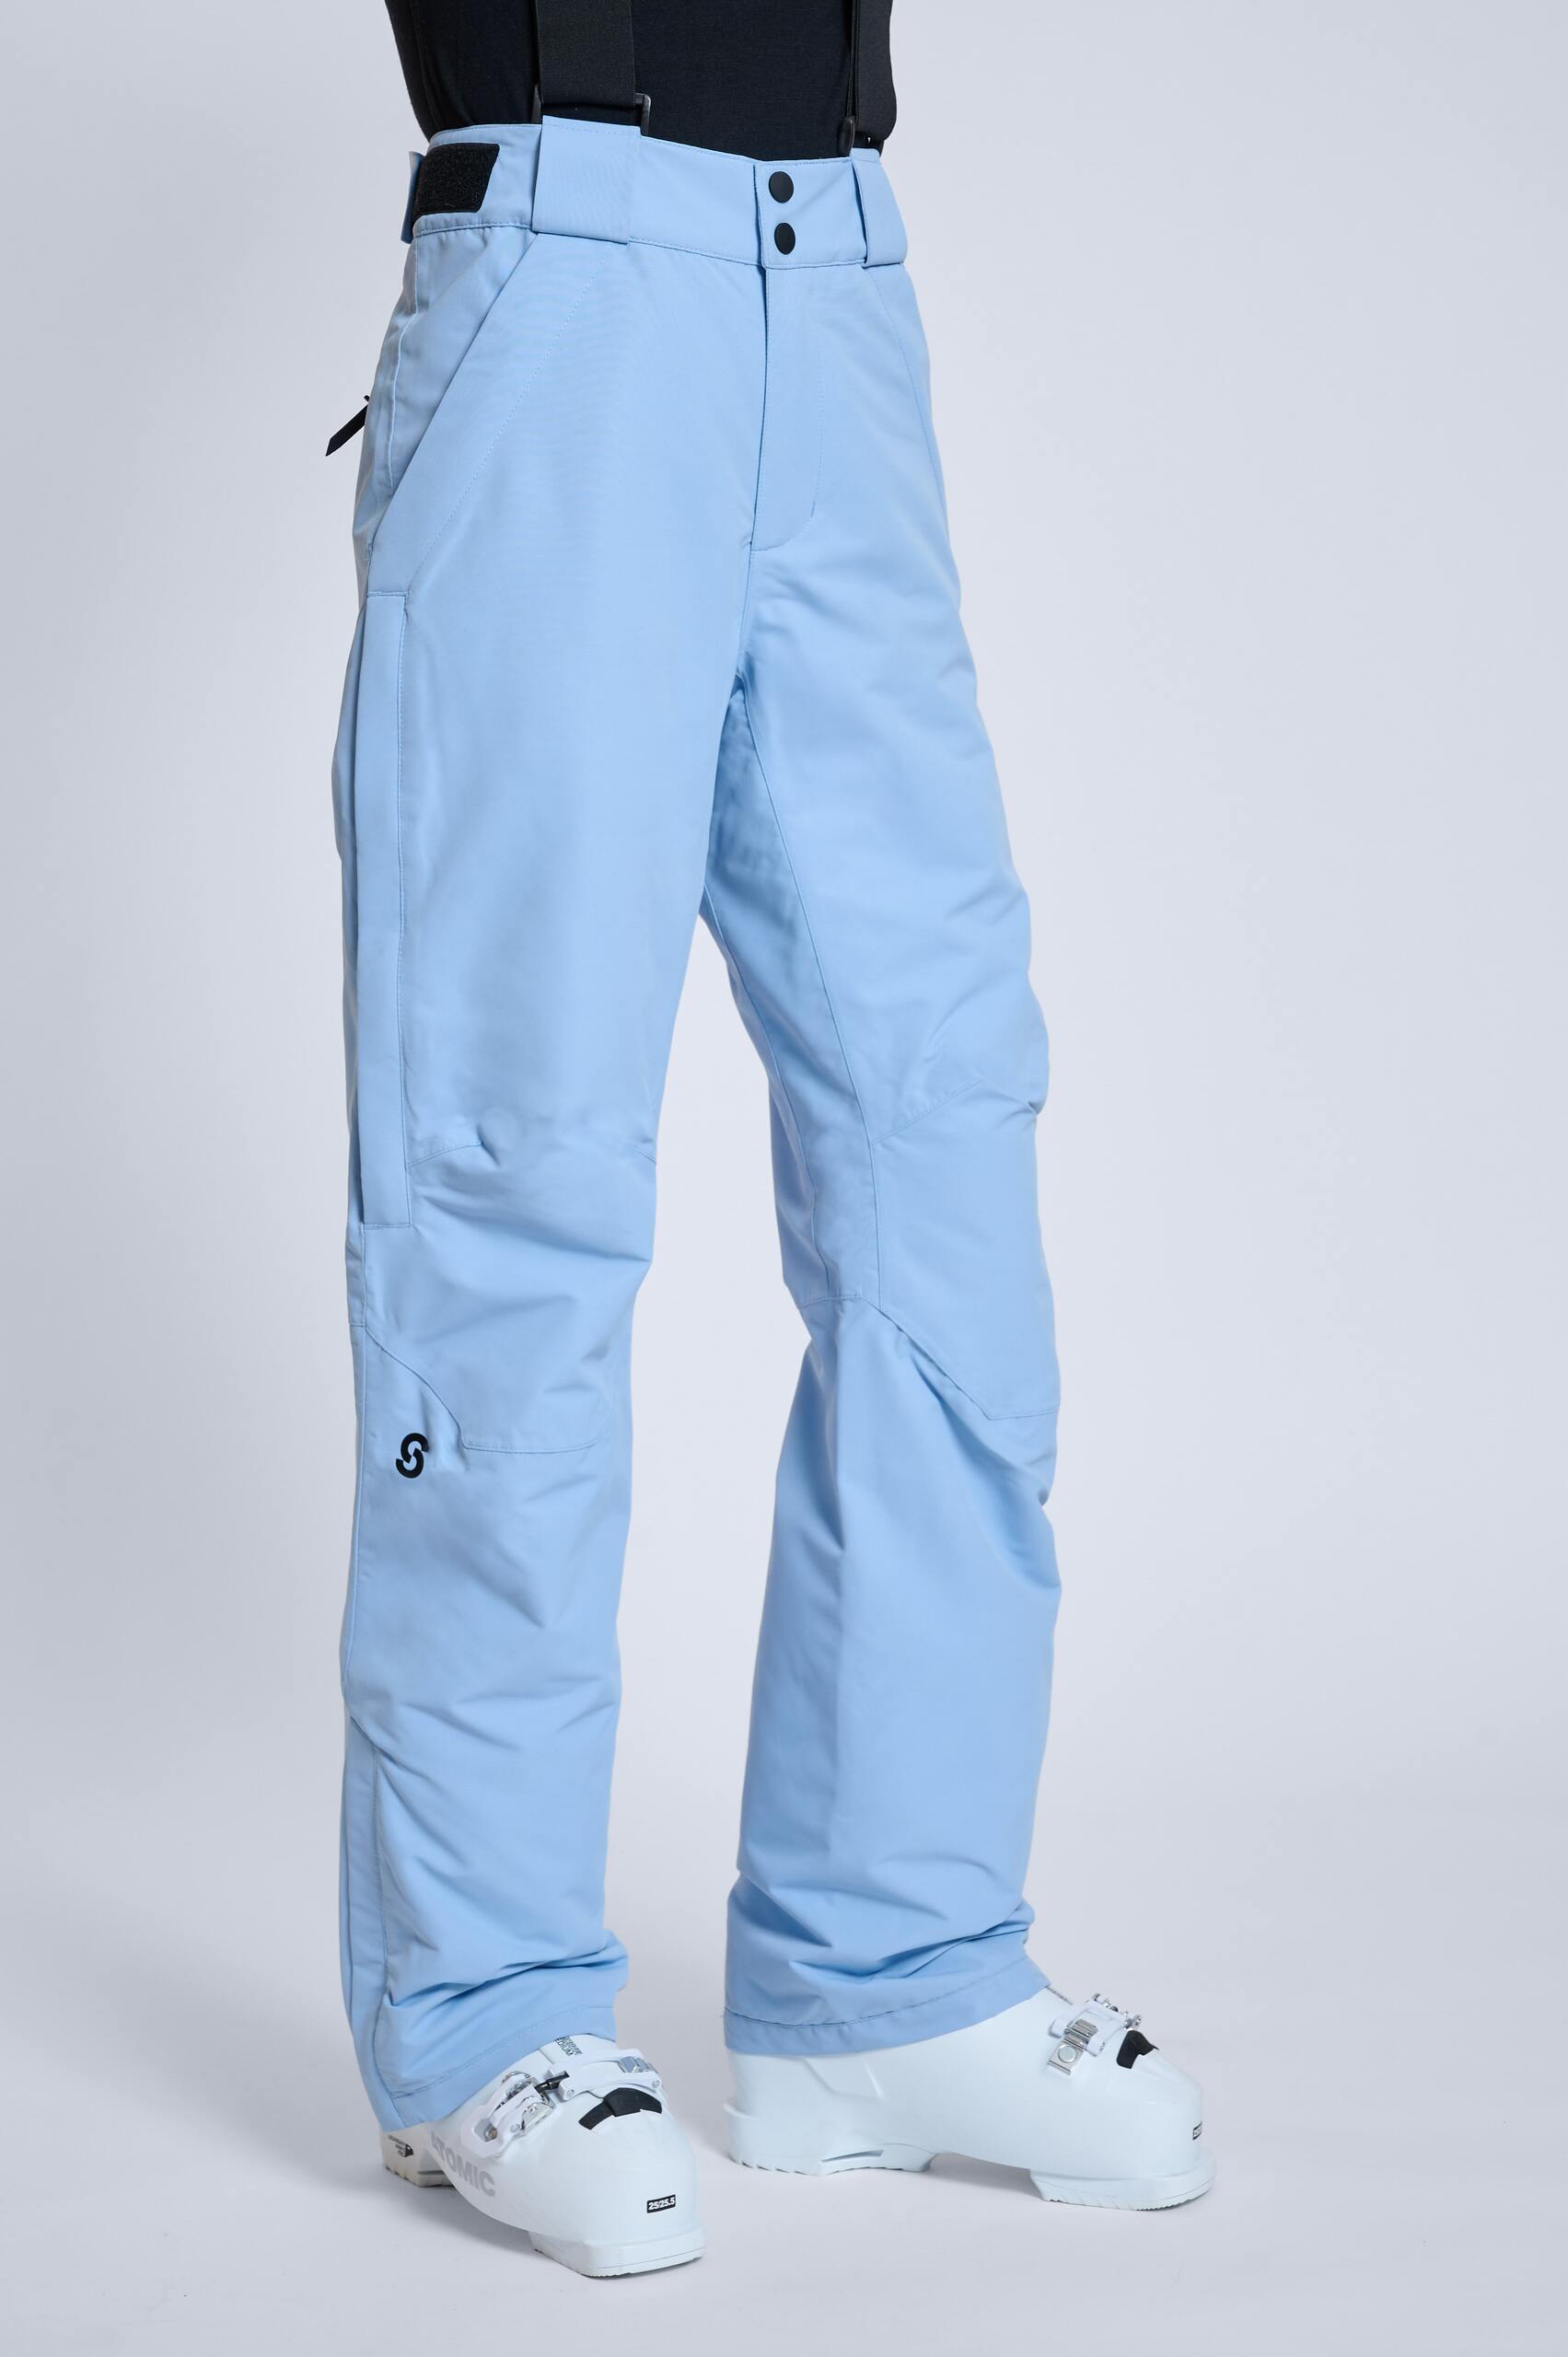 Fusalp Ranger Iii Ski Trousers In Blue | ModeSens